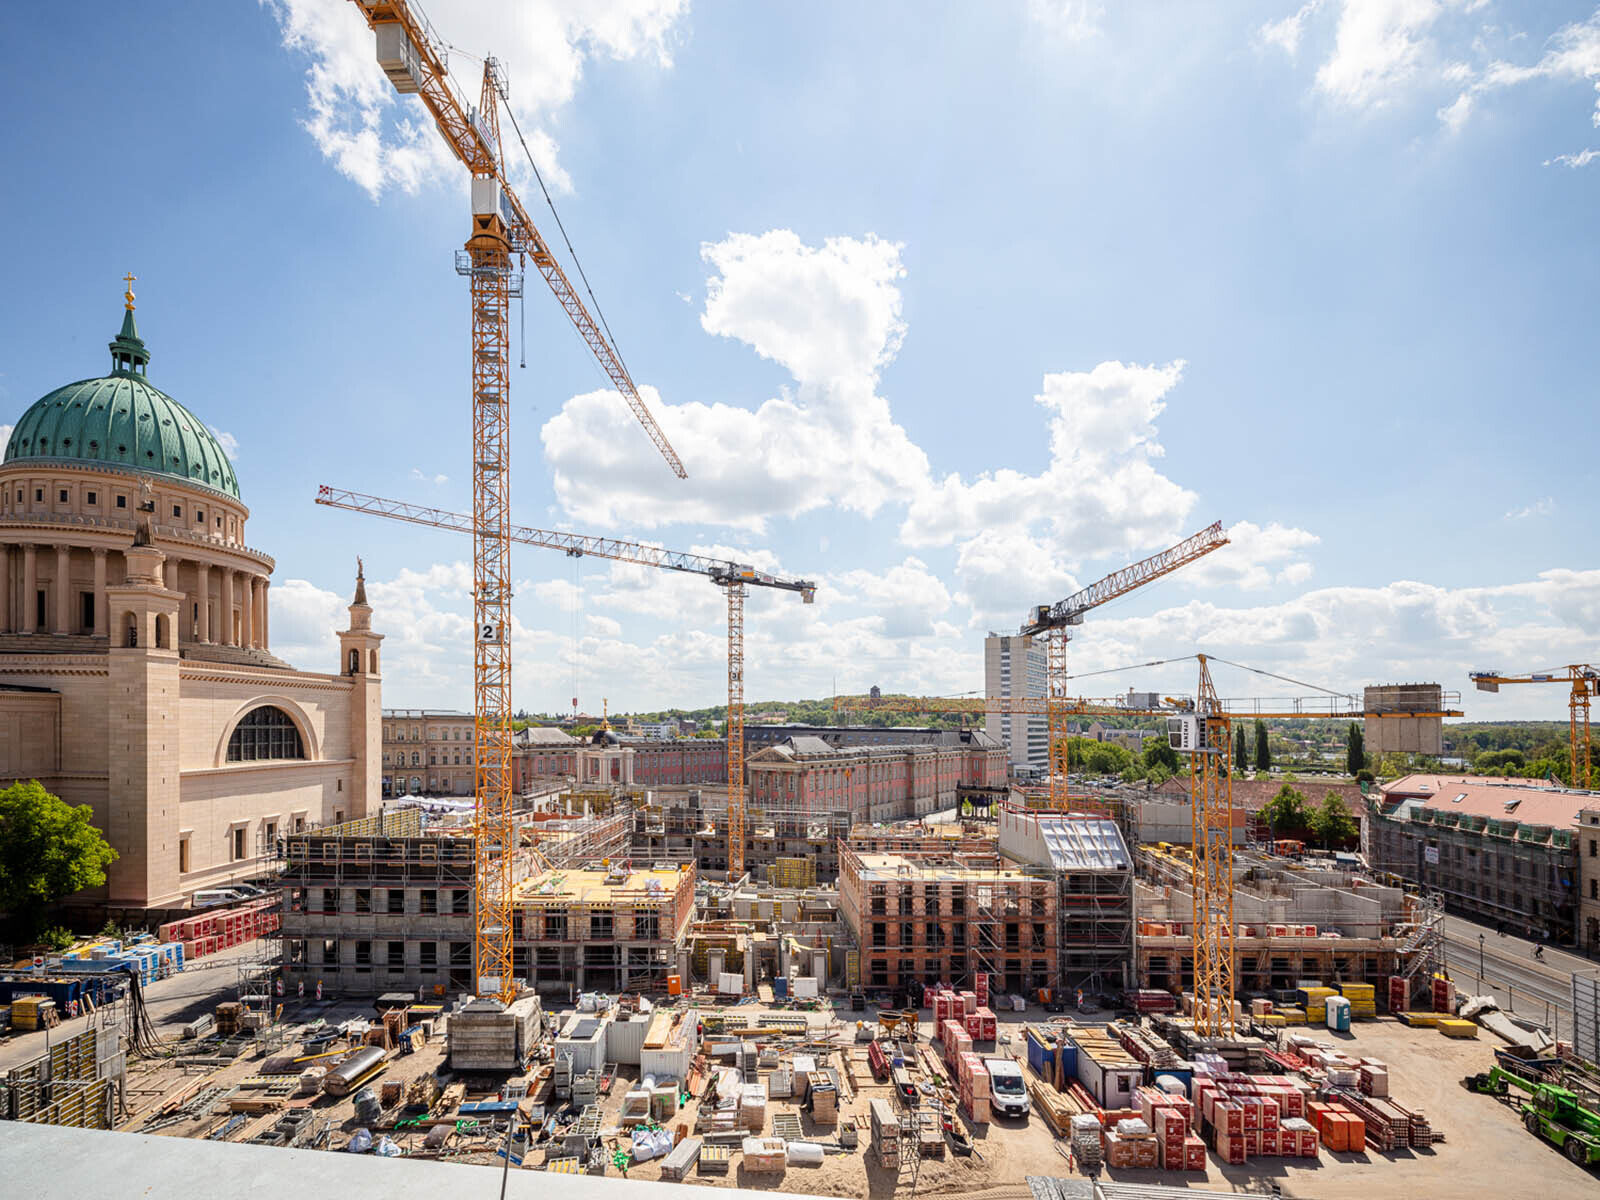 Foto: Blick vom Bildungsforum auf die Baustelle Block III. Zu sehen sind Baumaterialien, Kräne und begonnene Hochbauarbeiten, links davon die Nikolaikirche und im Hintergrund der Landtag.